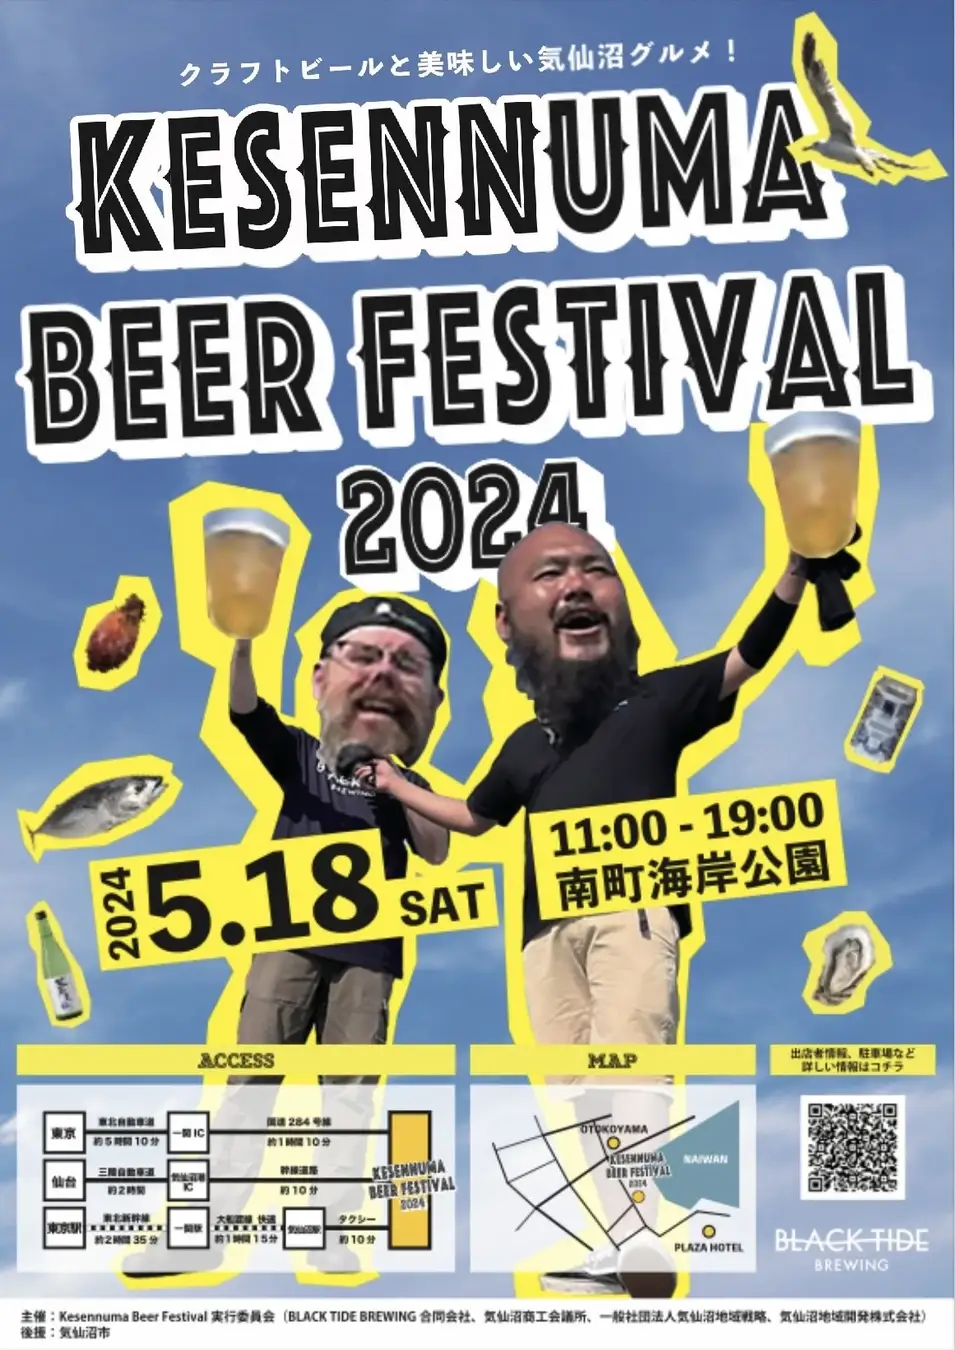 気仙沼の魅力満載！！ クラフトビール、気仙沼のグルメが楽しめるイベント「 Kesennuma Beer Festival 2024 」5月18日に内湾エリア「南町海岸公園」で開催！